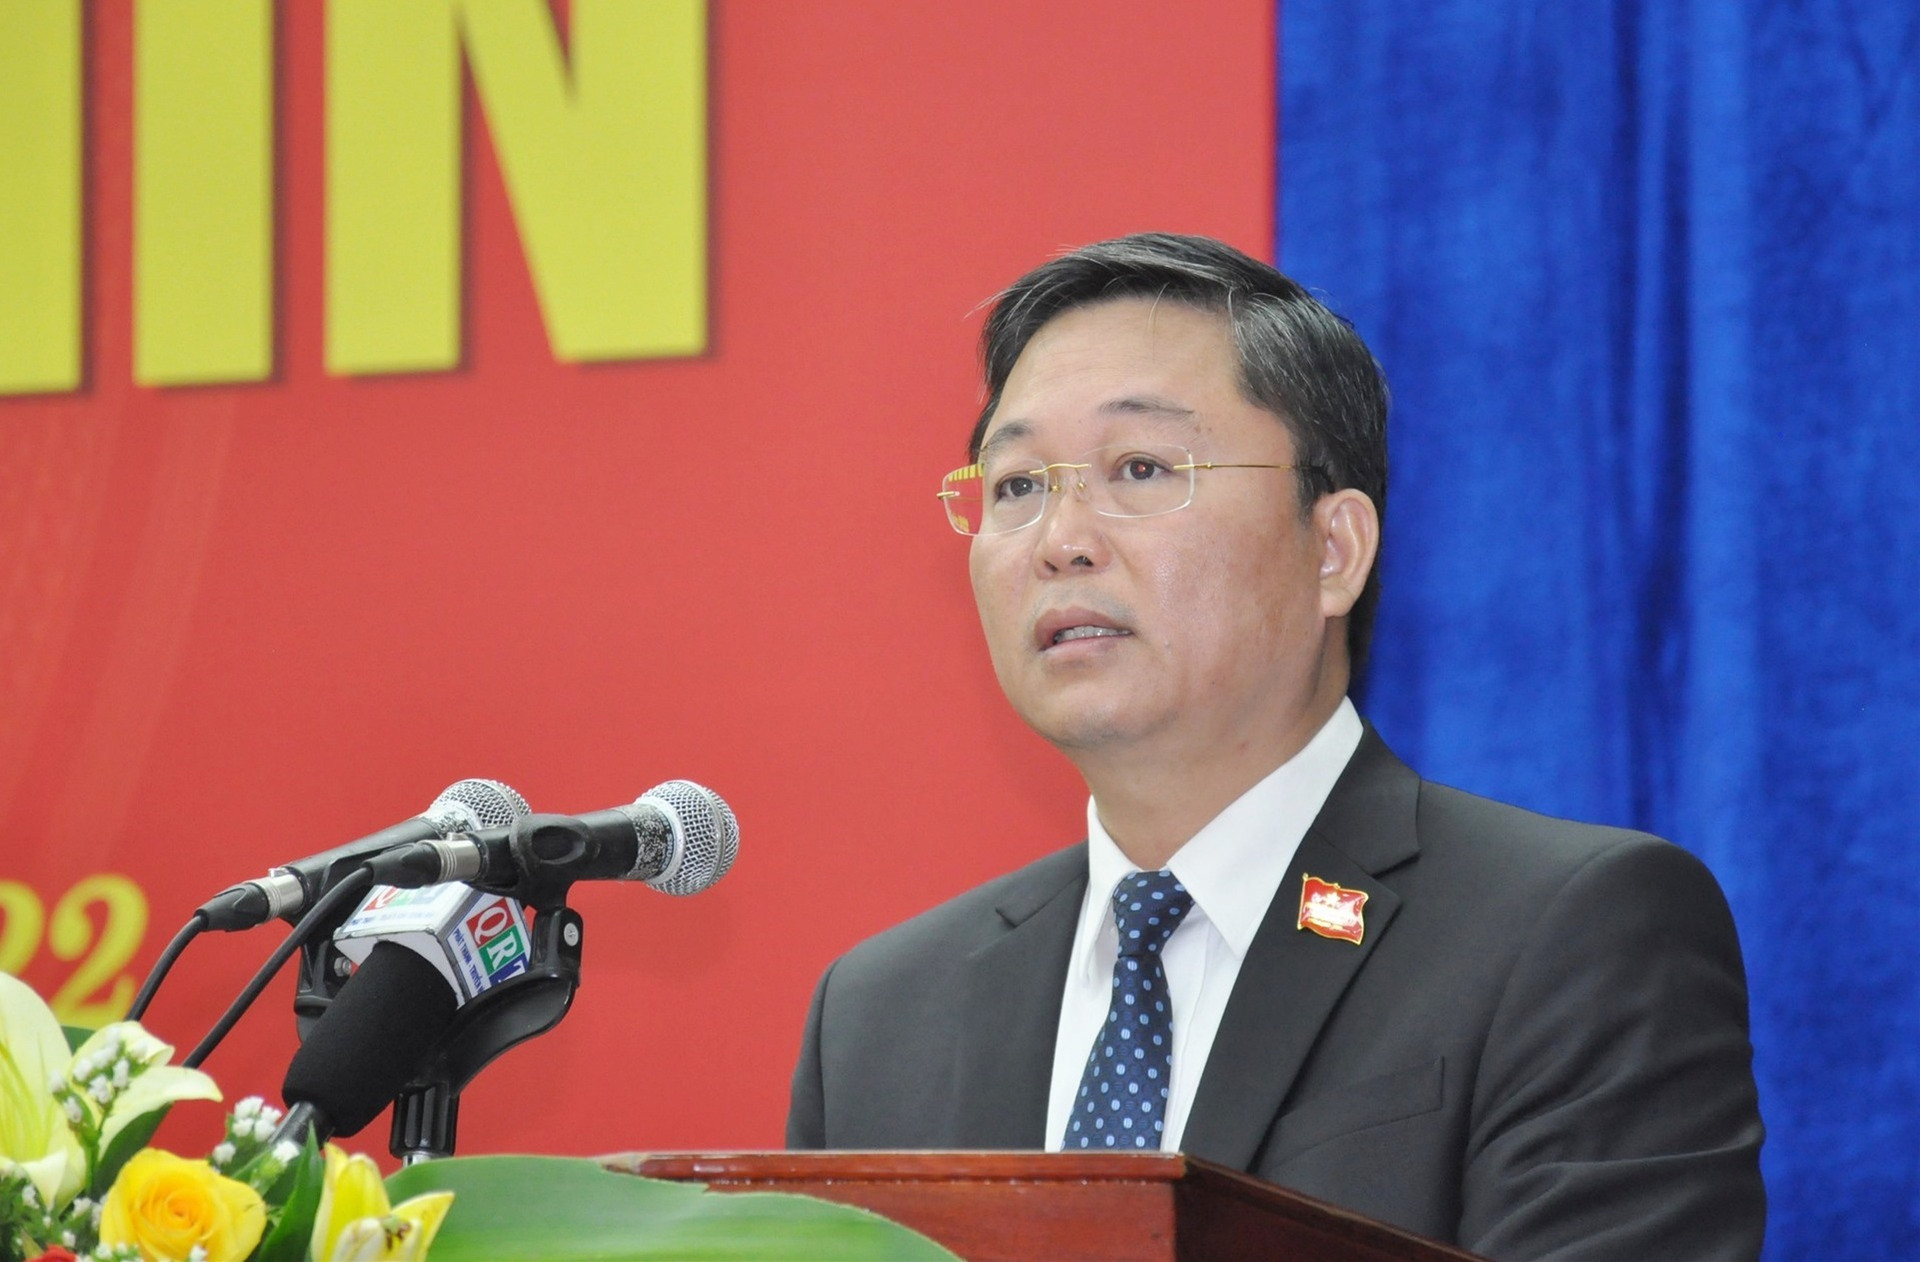 Chủ tịch UBND tỉnh Lê Trí Thanh trình bày báo cáo về tình hình kinh tế - xã hội 6 tháng đầu năm 2022. Ảnh: N.Đ